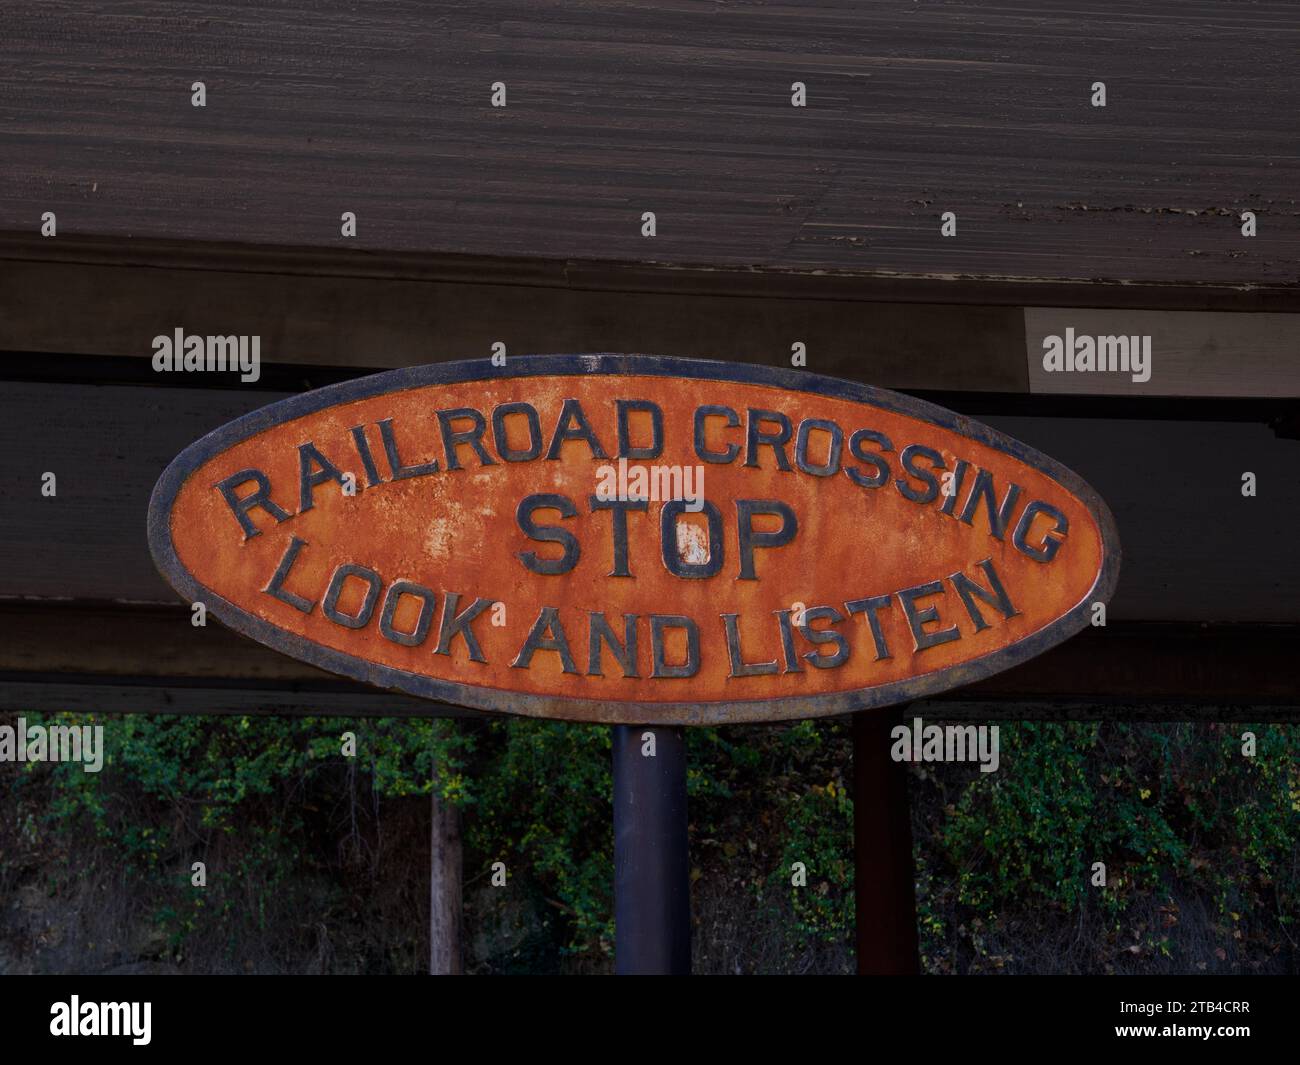 Stop, Look, Listen sign at Staunton train station, Staunton, VA, USA Stock Photo